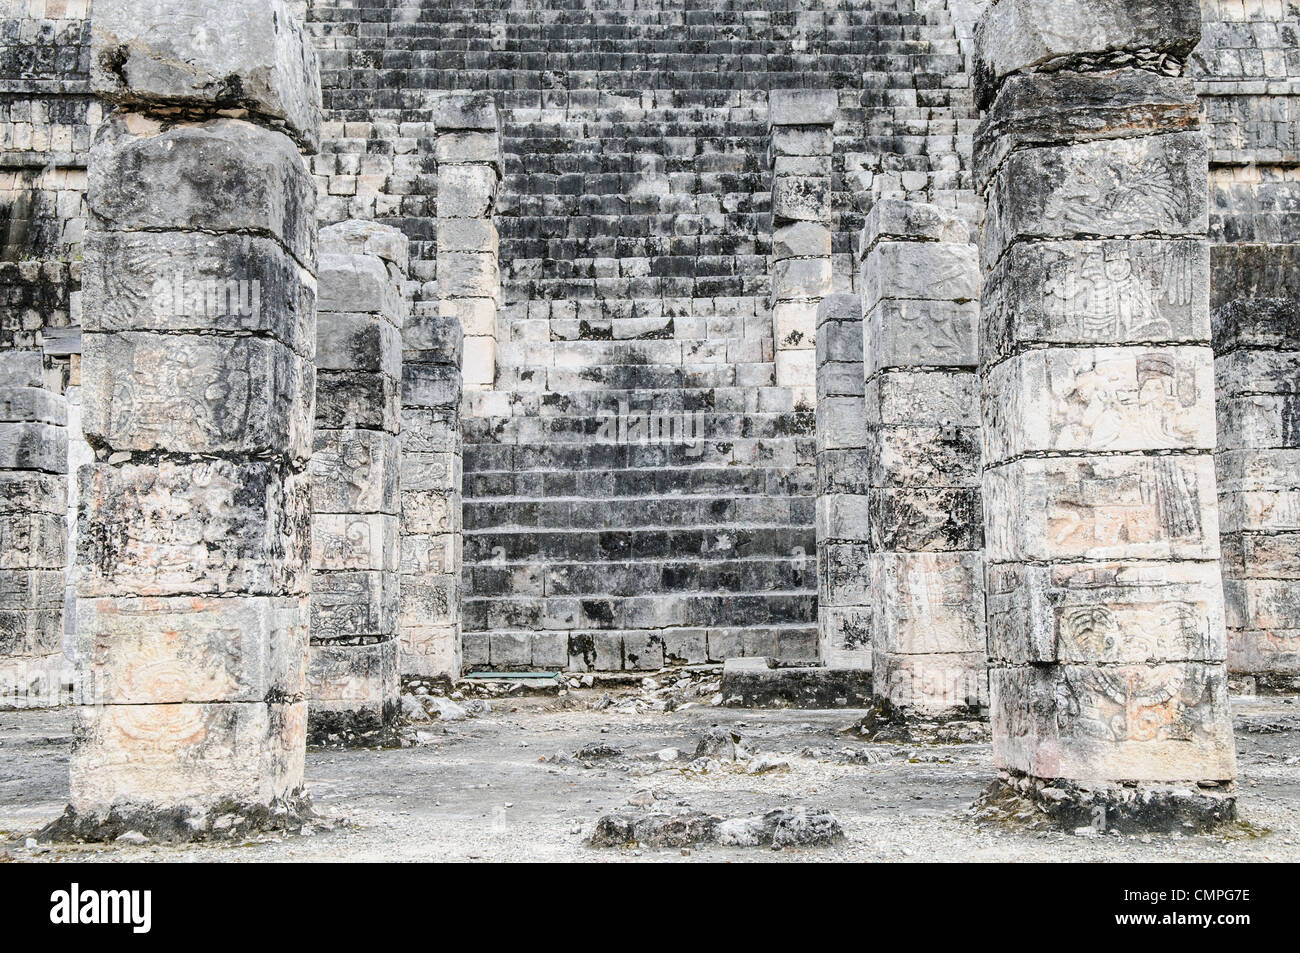 CHICHEN ITZA, Messico - gradini di pietra e colonne nella zona archeologica di Chichen Itza nel centro dello Yucatan, un'antica città maya e uno dei più famosi siti della civiltà maya. Chichen Itza, situato sulla penisola dello Yucatan in Messico, è un importante sito archeologico che mostra la ricca storia e la conoscenza scientifica avanzata dell'antica civiltà Maya. E 'più noto per la Piramide Kukulkan, o 'El Castillo', una struttura a quattro lati con 91 gradini su ogni lato, che culmina in un singolo gradino in cima per rappresentare i 365 giorni dell'anno solare. Foto Stock